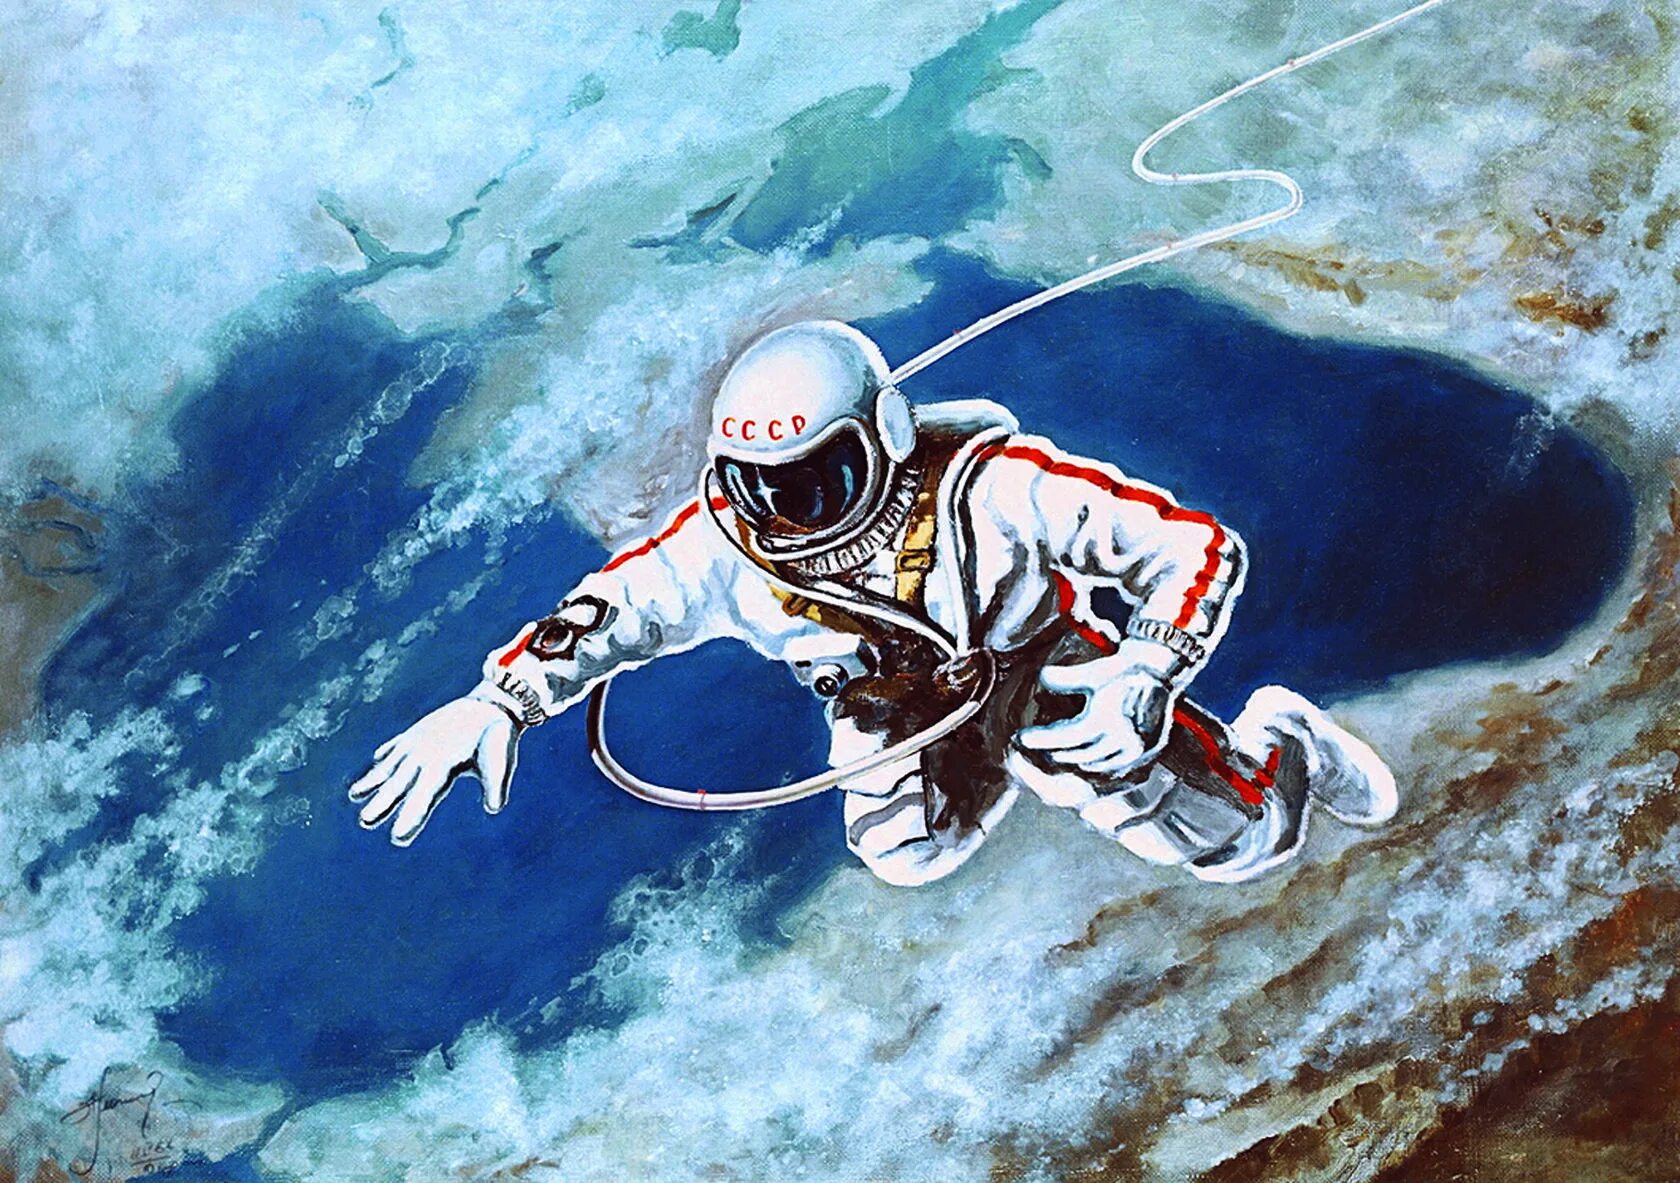 Первым вышел в открытый космос российский космонавт. Картина Алексея Леонова над черным морем.